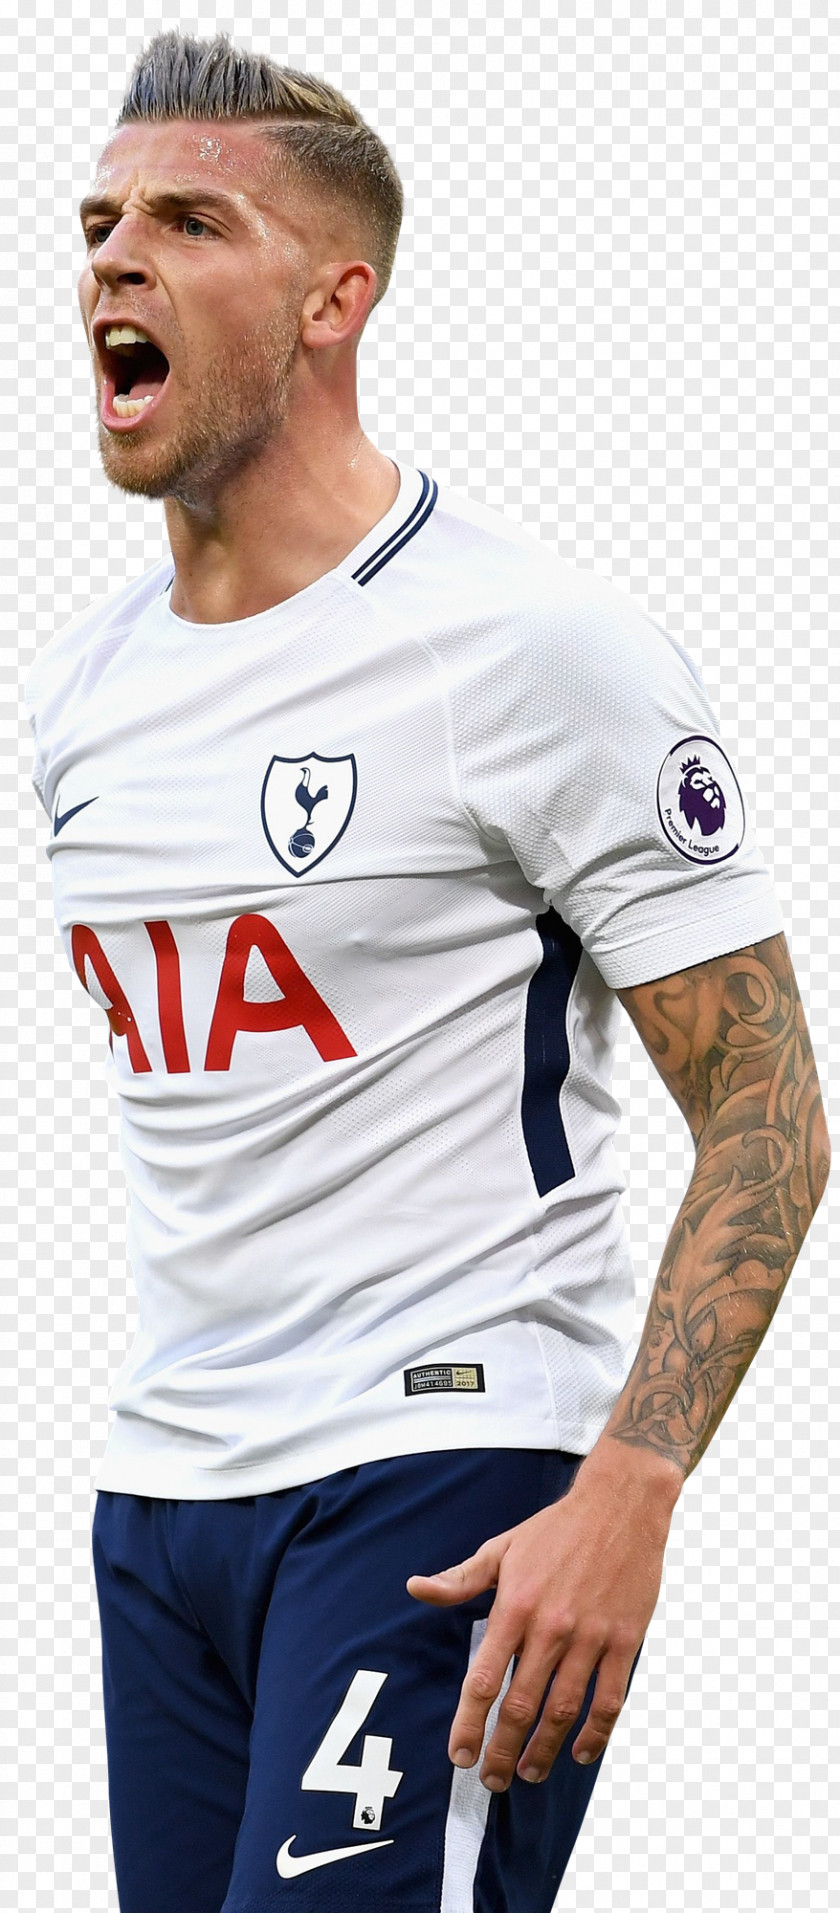 Premier League Toby Alderweireld Tottenham Hotspur F.C. North London Derby Paris Saint-Germain PNG